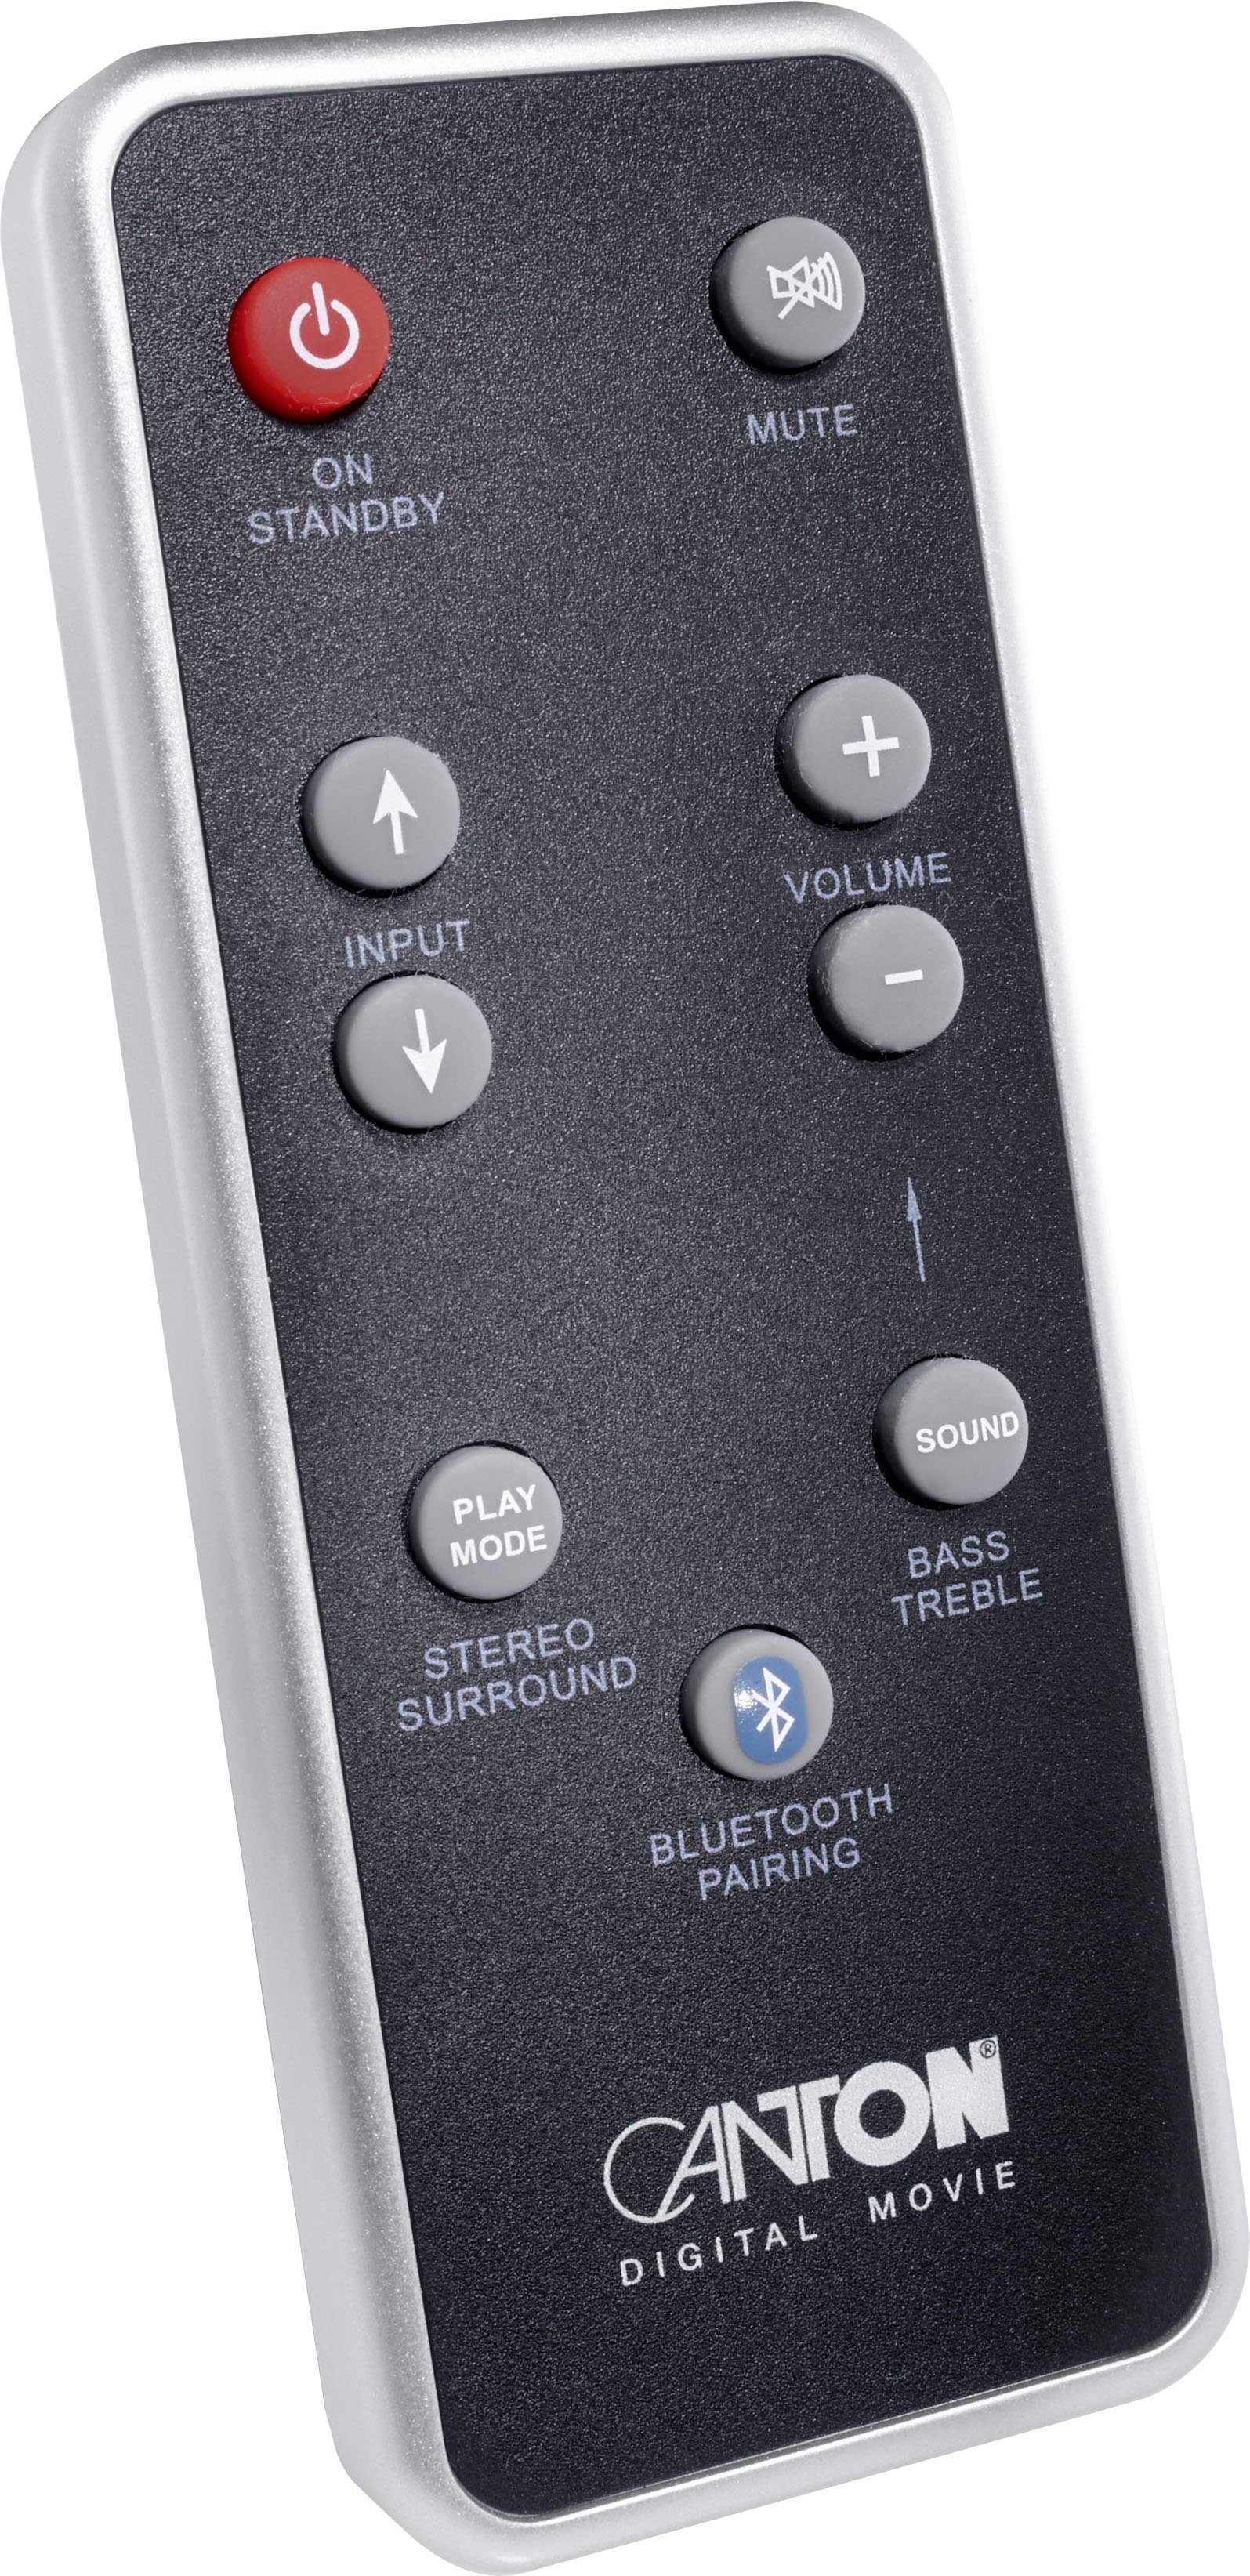 CANTON DM 60 2.1 Soundbar (Bluetooth, W) 200